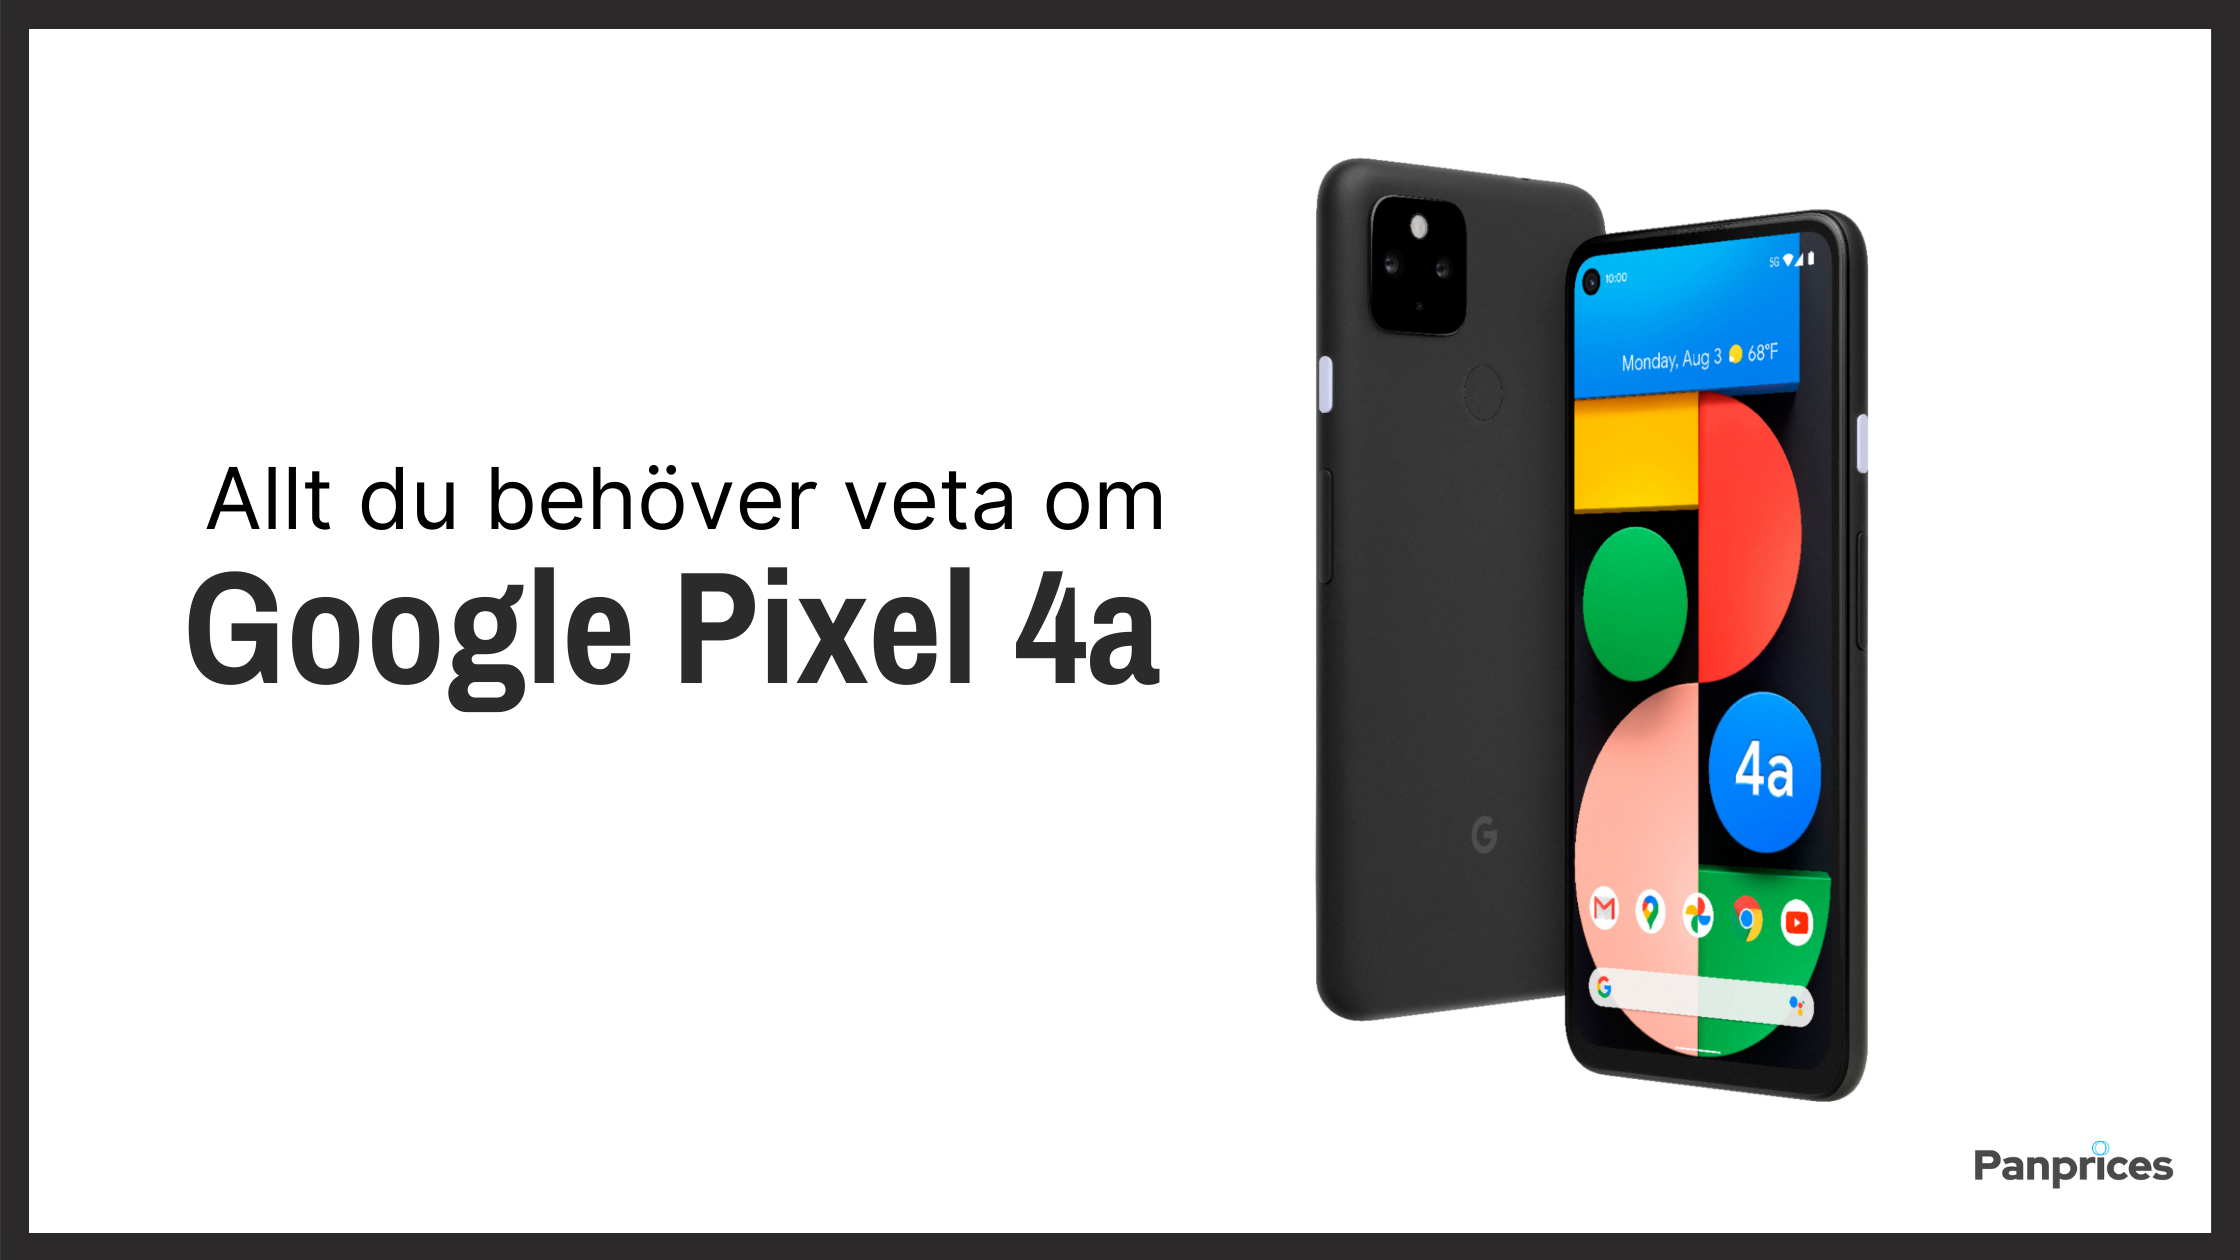 Allt du behöver veta om Google Pixel 4a